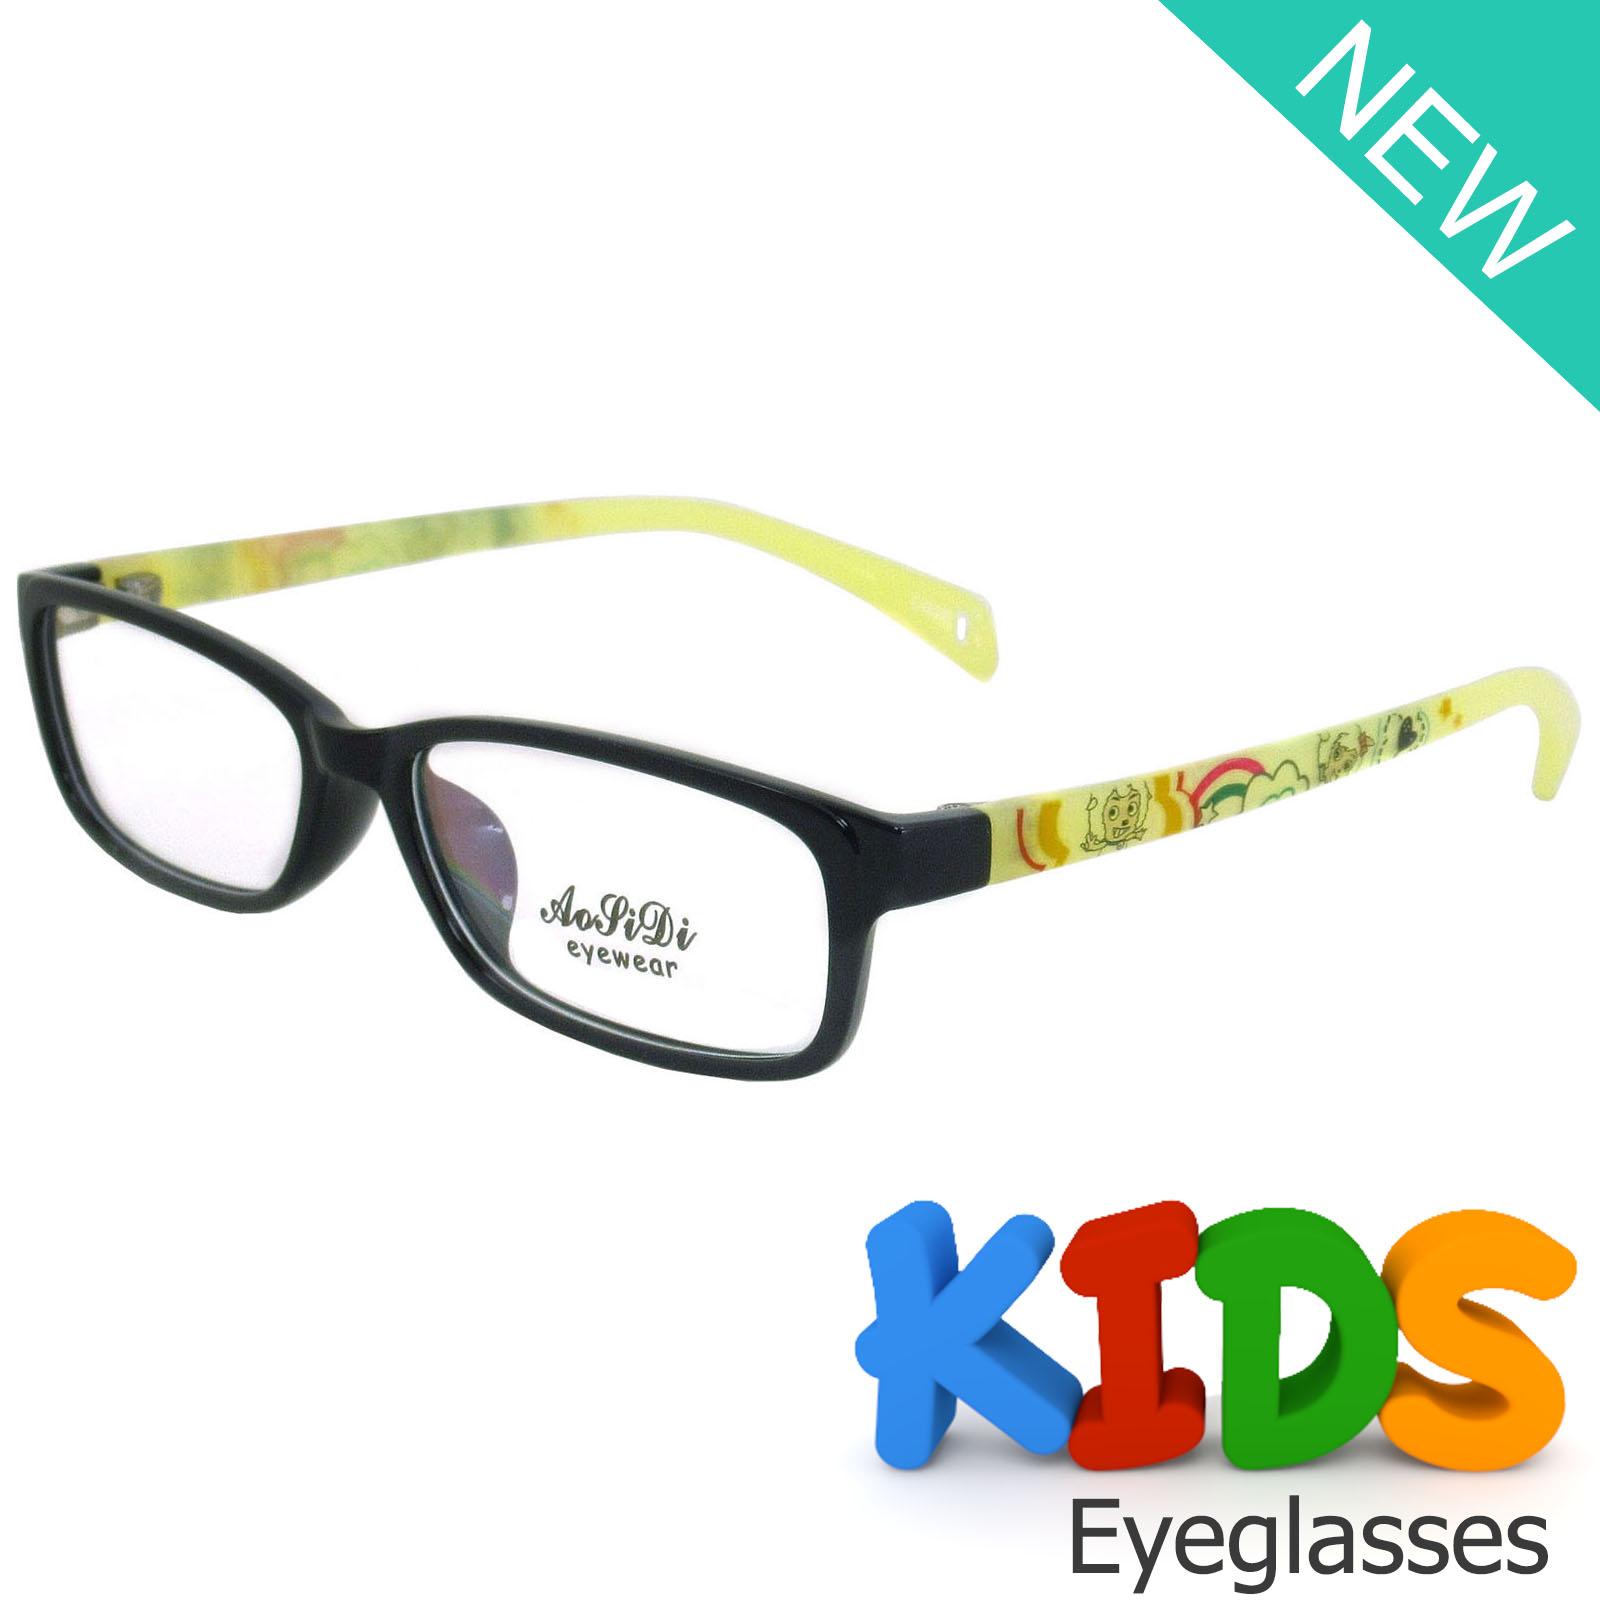 แว่นตาเกาหลีเด็ก Fashion Korea Children แว่นตาเด็ก รุ่น 1618 C-37 สีดำขาเหลือง กรอบแว่นตาเด็ก Rectangle ทรงสี่เหลี่ยมผืนผ้า Eyeglass baby frame ( สำหรับตัดเลนส์ ) วัสดุ PC เบา ขาข้อต่อ Kid leg joints Plastic Grade A material Eyewear Top Glasses